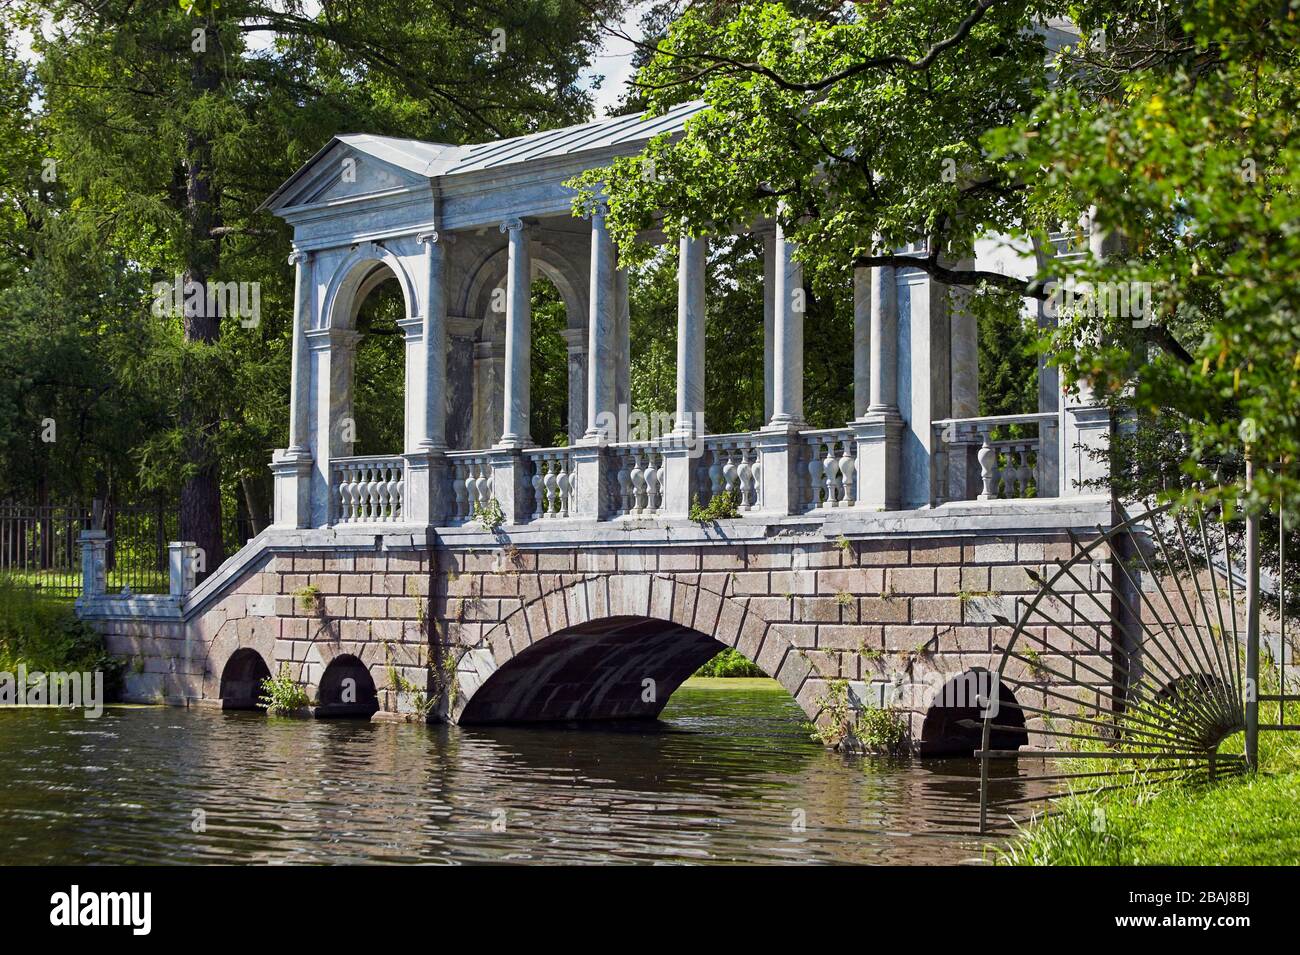 Pont de marbre Pont palladien 1777 dans le Parc du Palais de Catherine, le Musée de l'Ermitage (Palais d'hiver), Tsarskoye Selo (Pouchkine), au sud de Banque D'Images